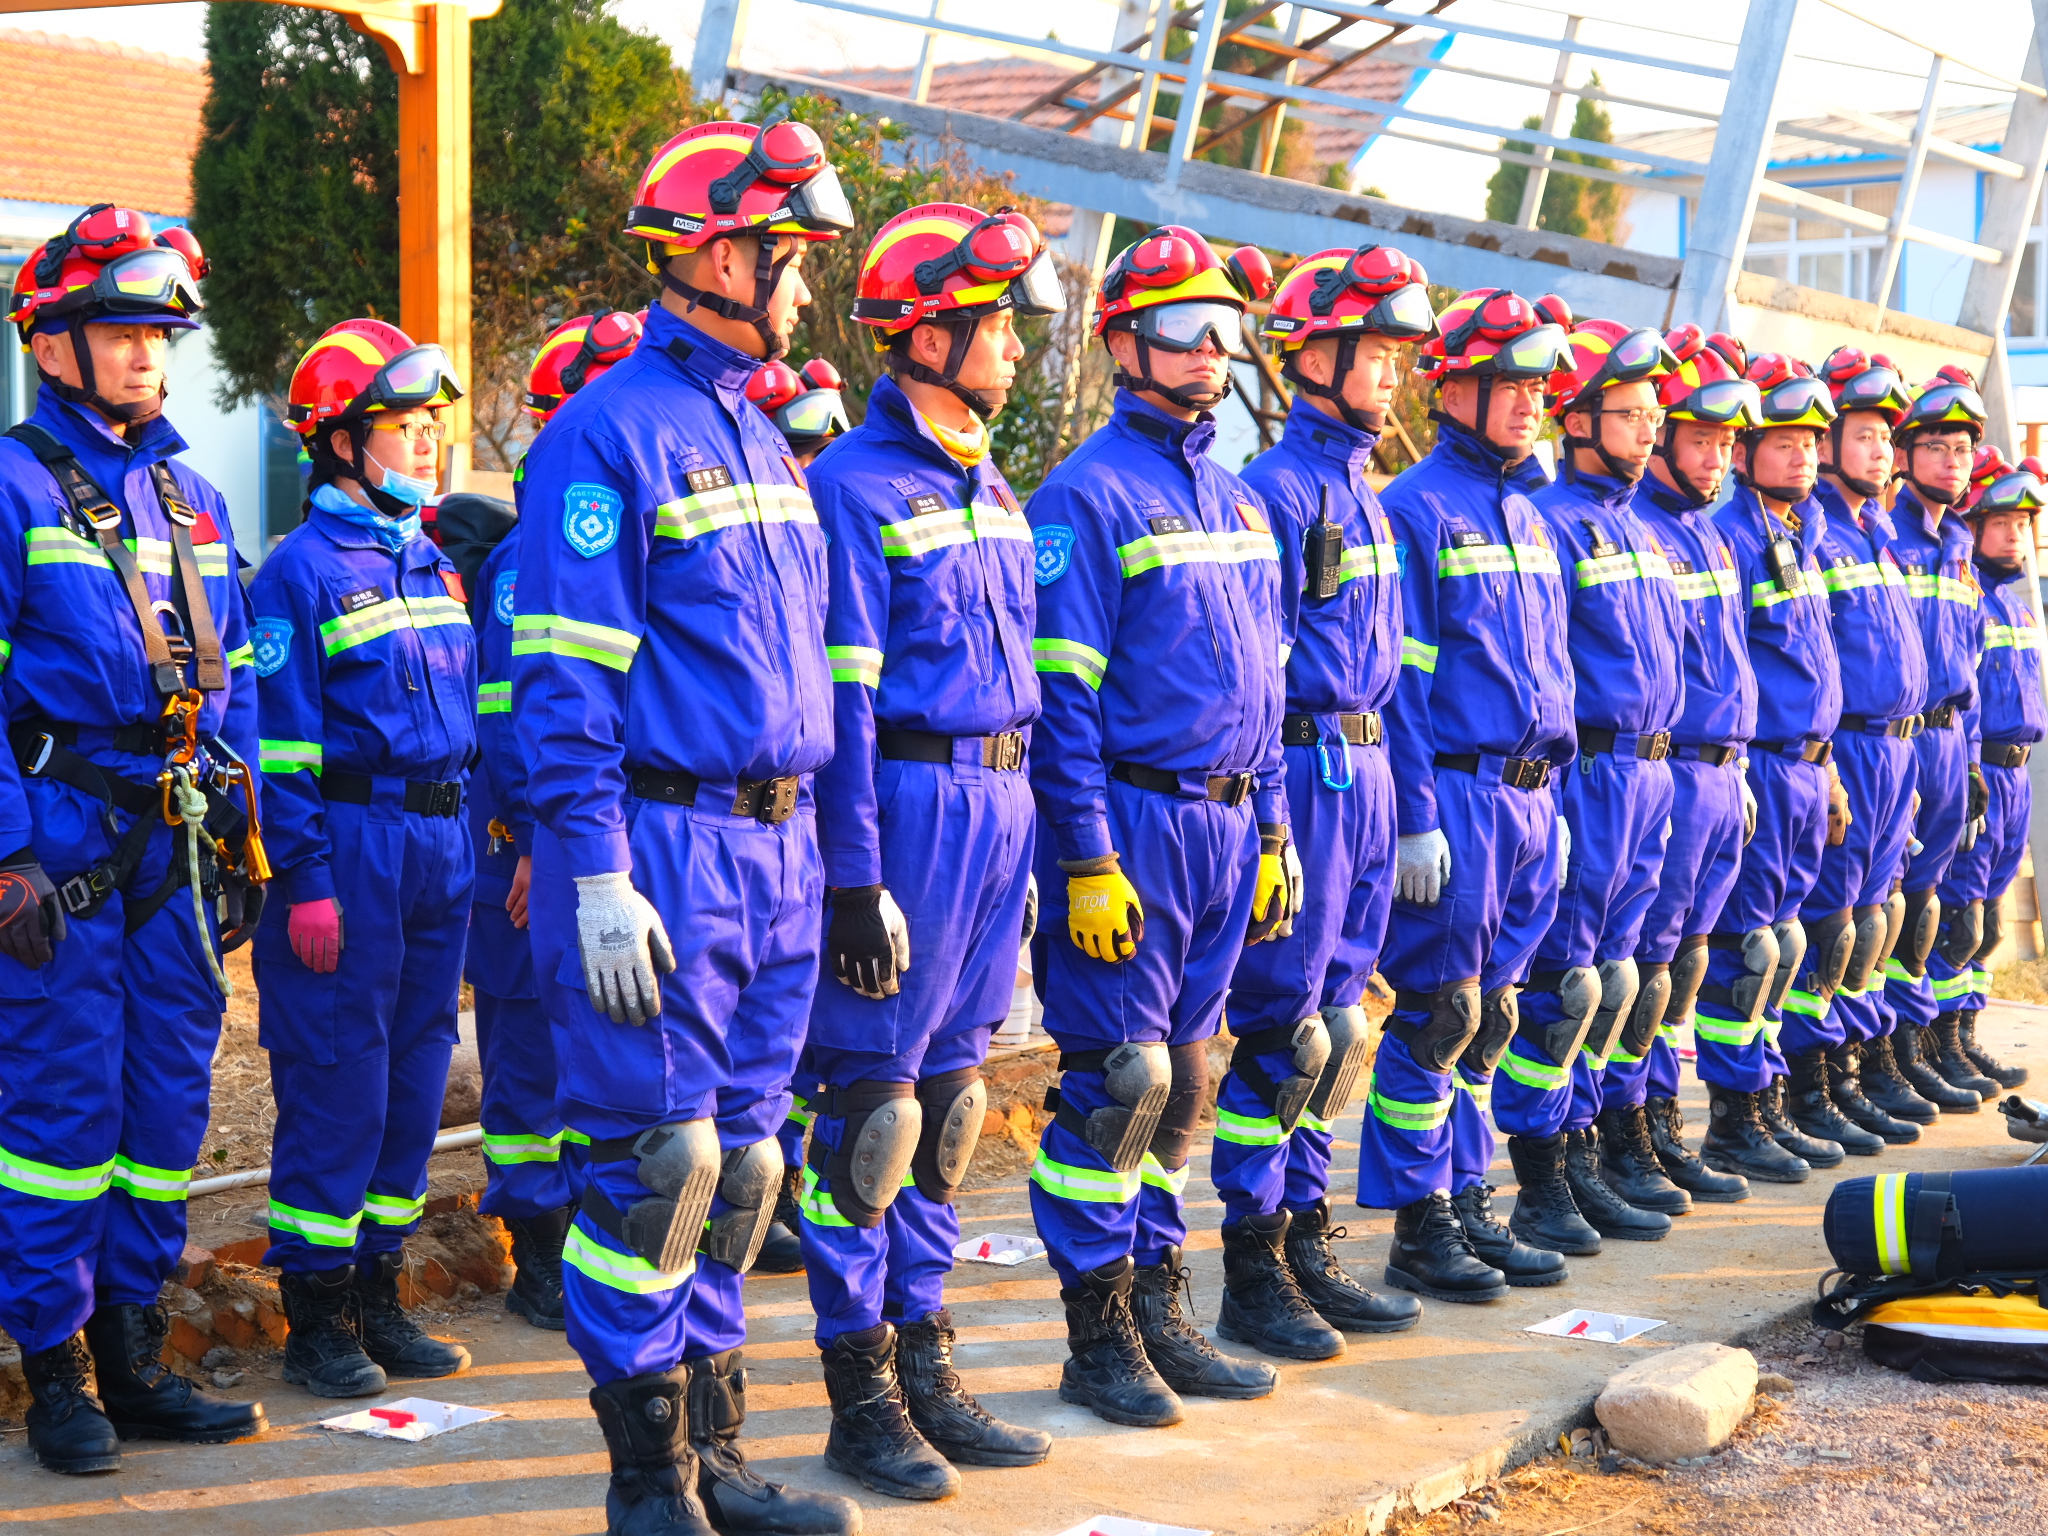 青岛红十字蓝天救援队十年冲在最前线救援人数近千名